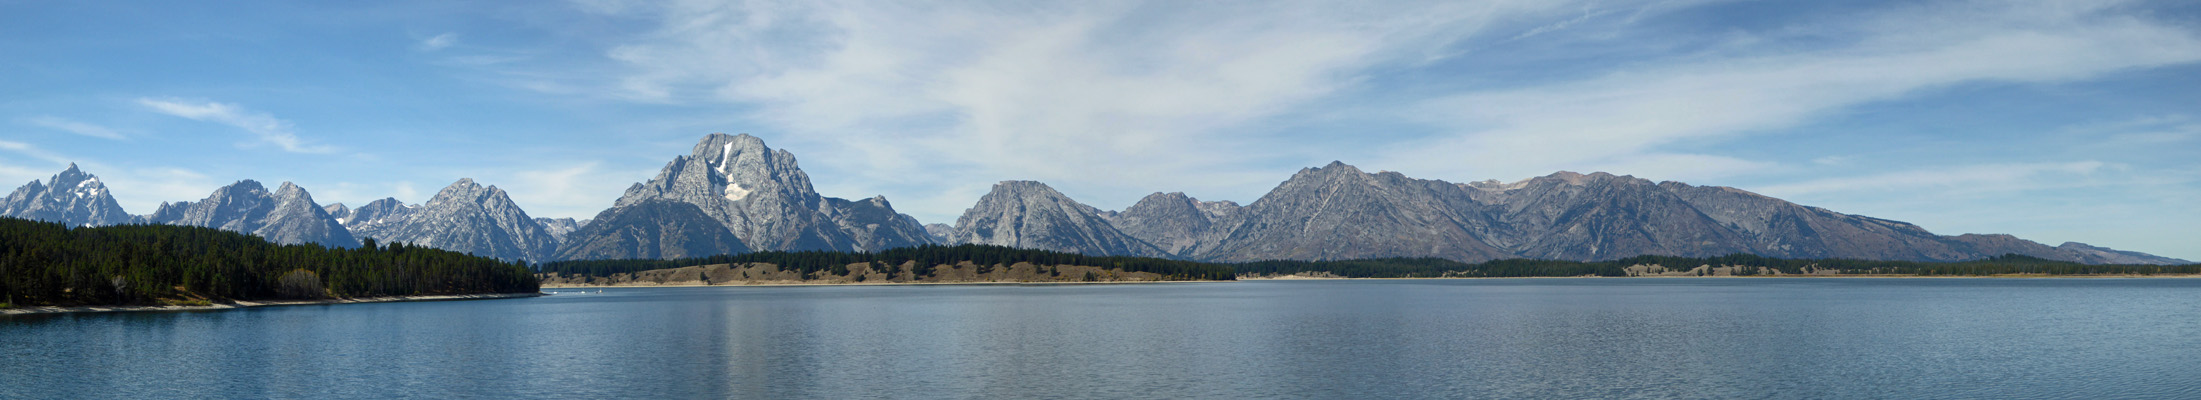 Jackson Lake view